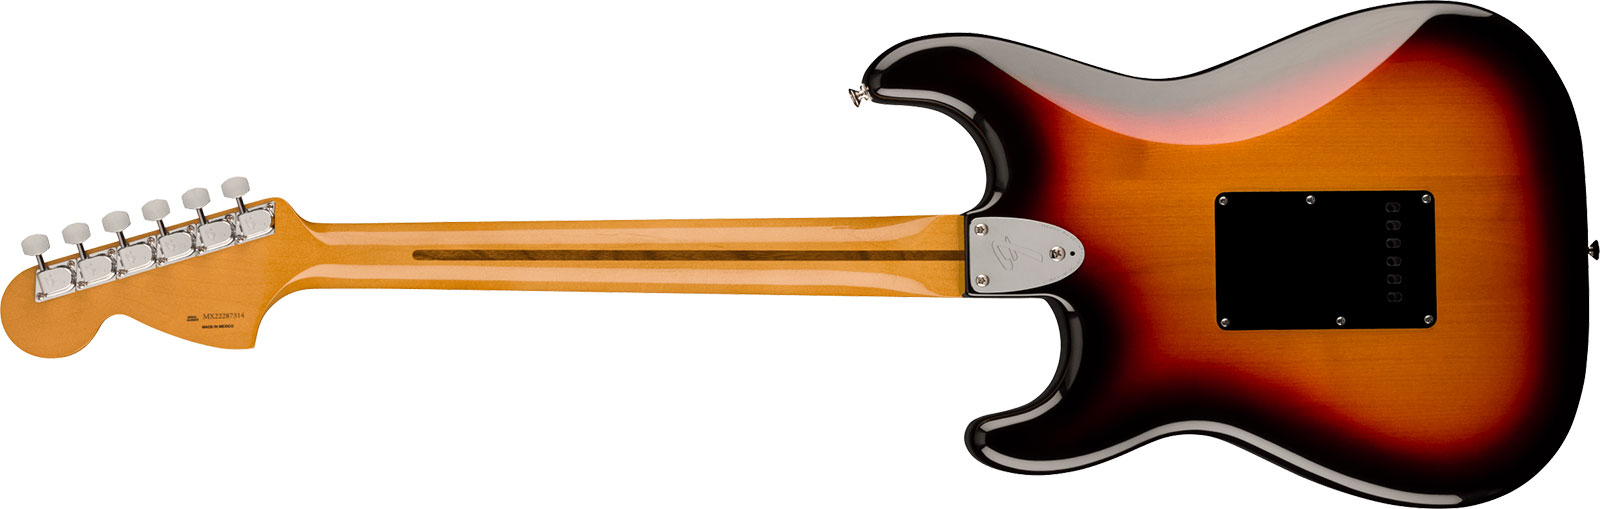 Fender Strat 70s Vintera 2 Mex 3s Trem Mn - 3-color Sunburst - E-Gitarre in Str-Form - Variation 1